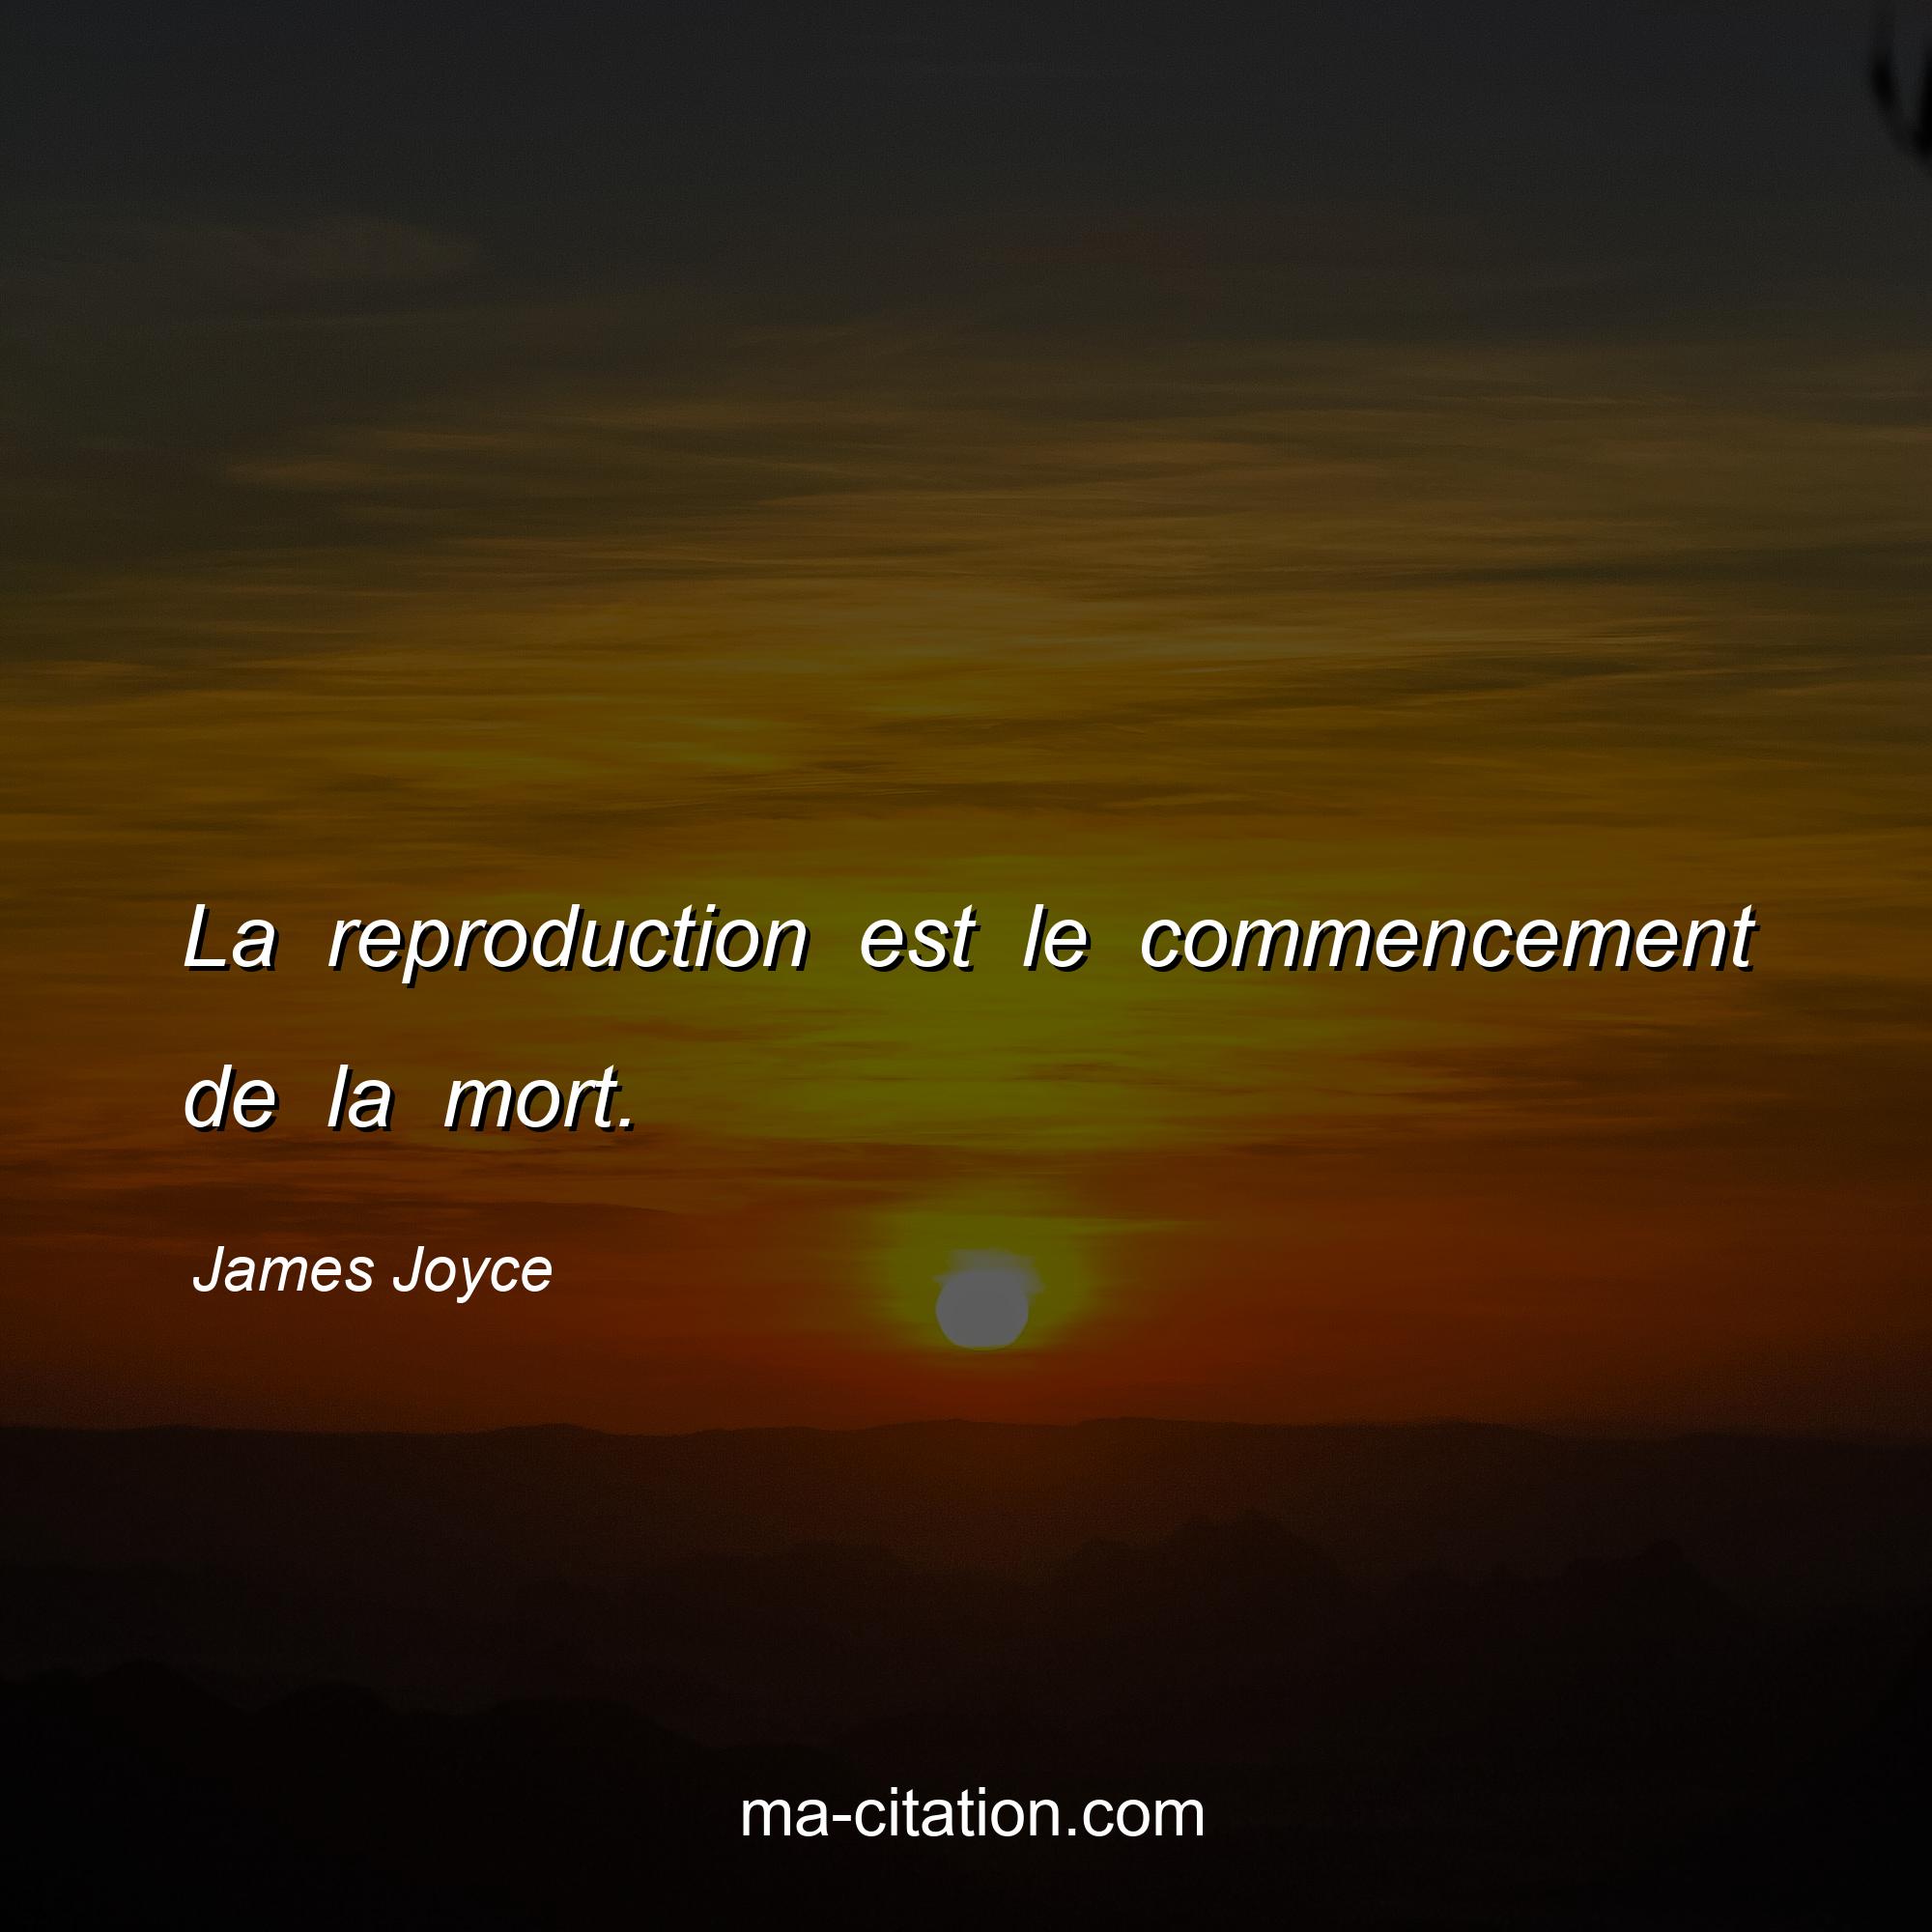 James Joyce : La reproduction est le commencement de la mort.